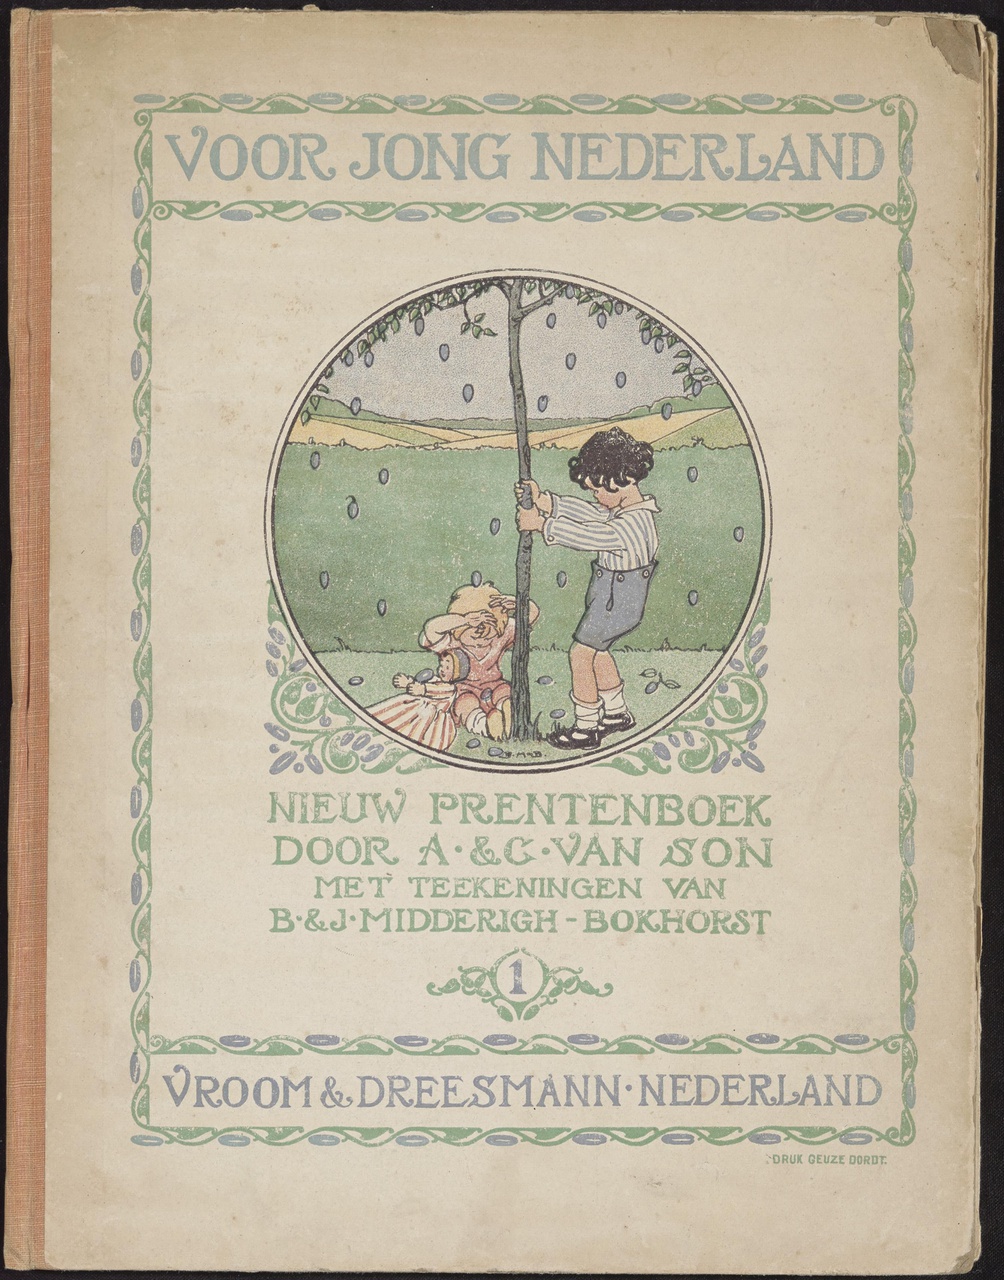 Kinder reclameboek "Voor Jong Nederland" 1